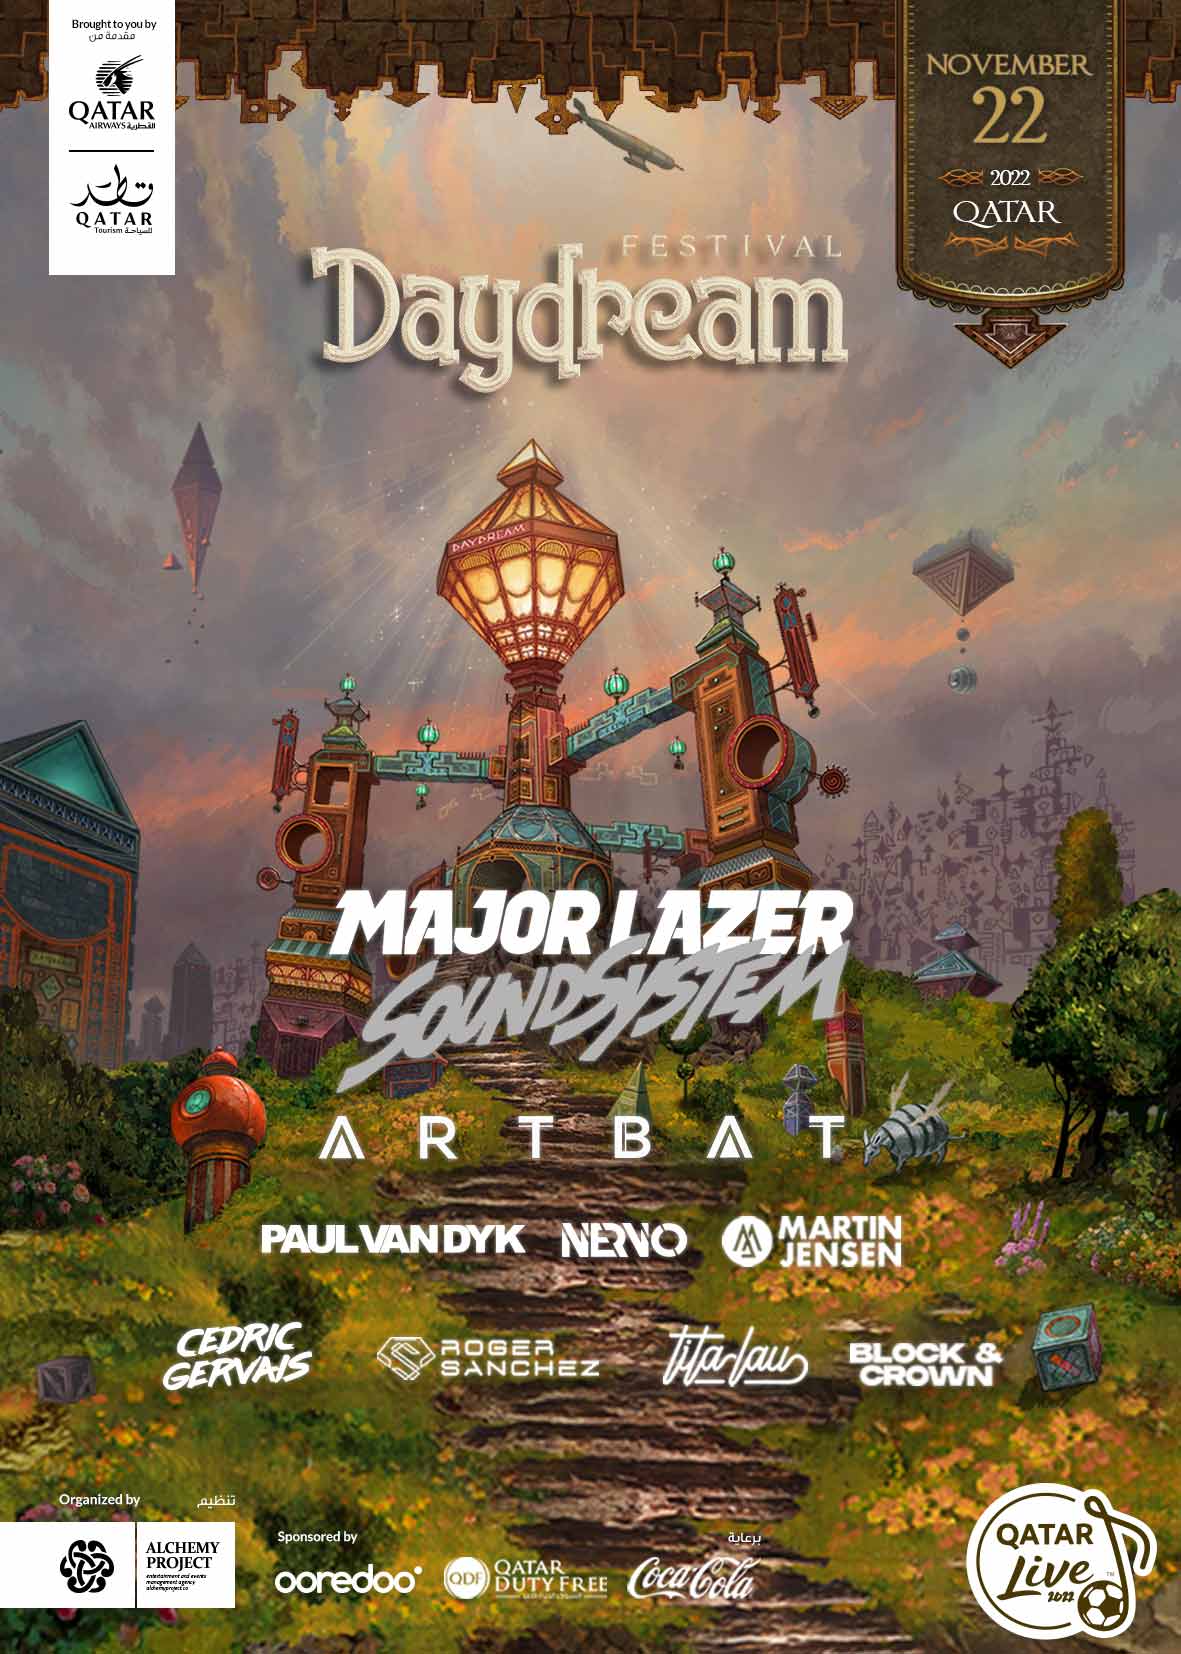 Daydream Music Festival 22nd November